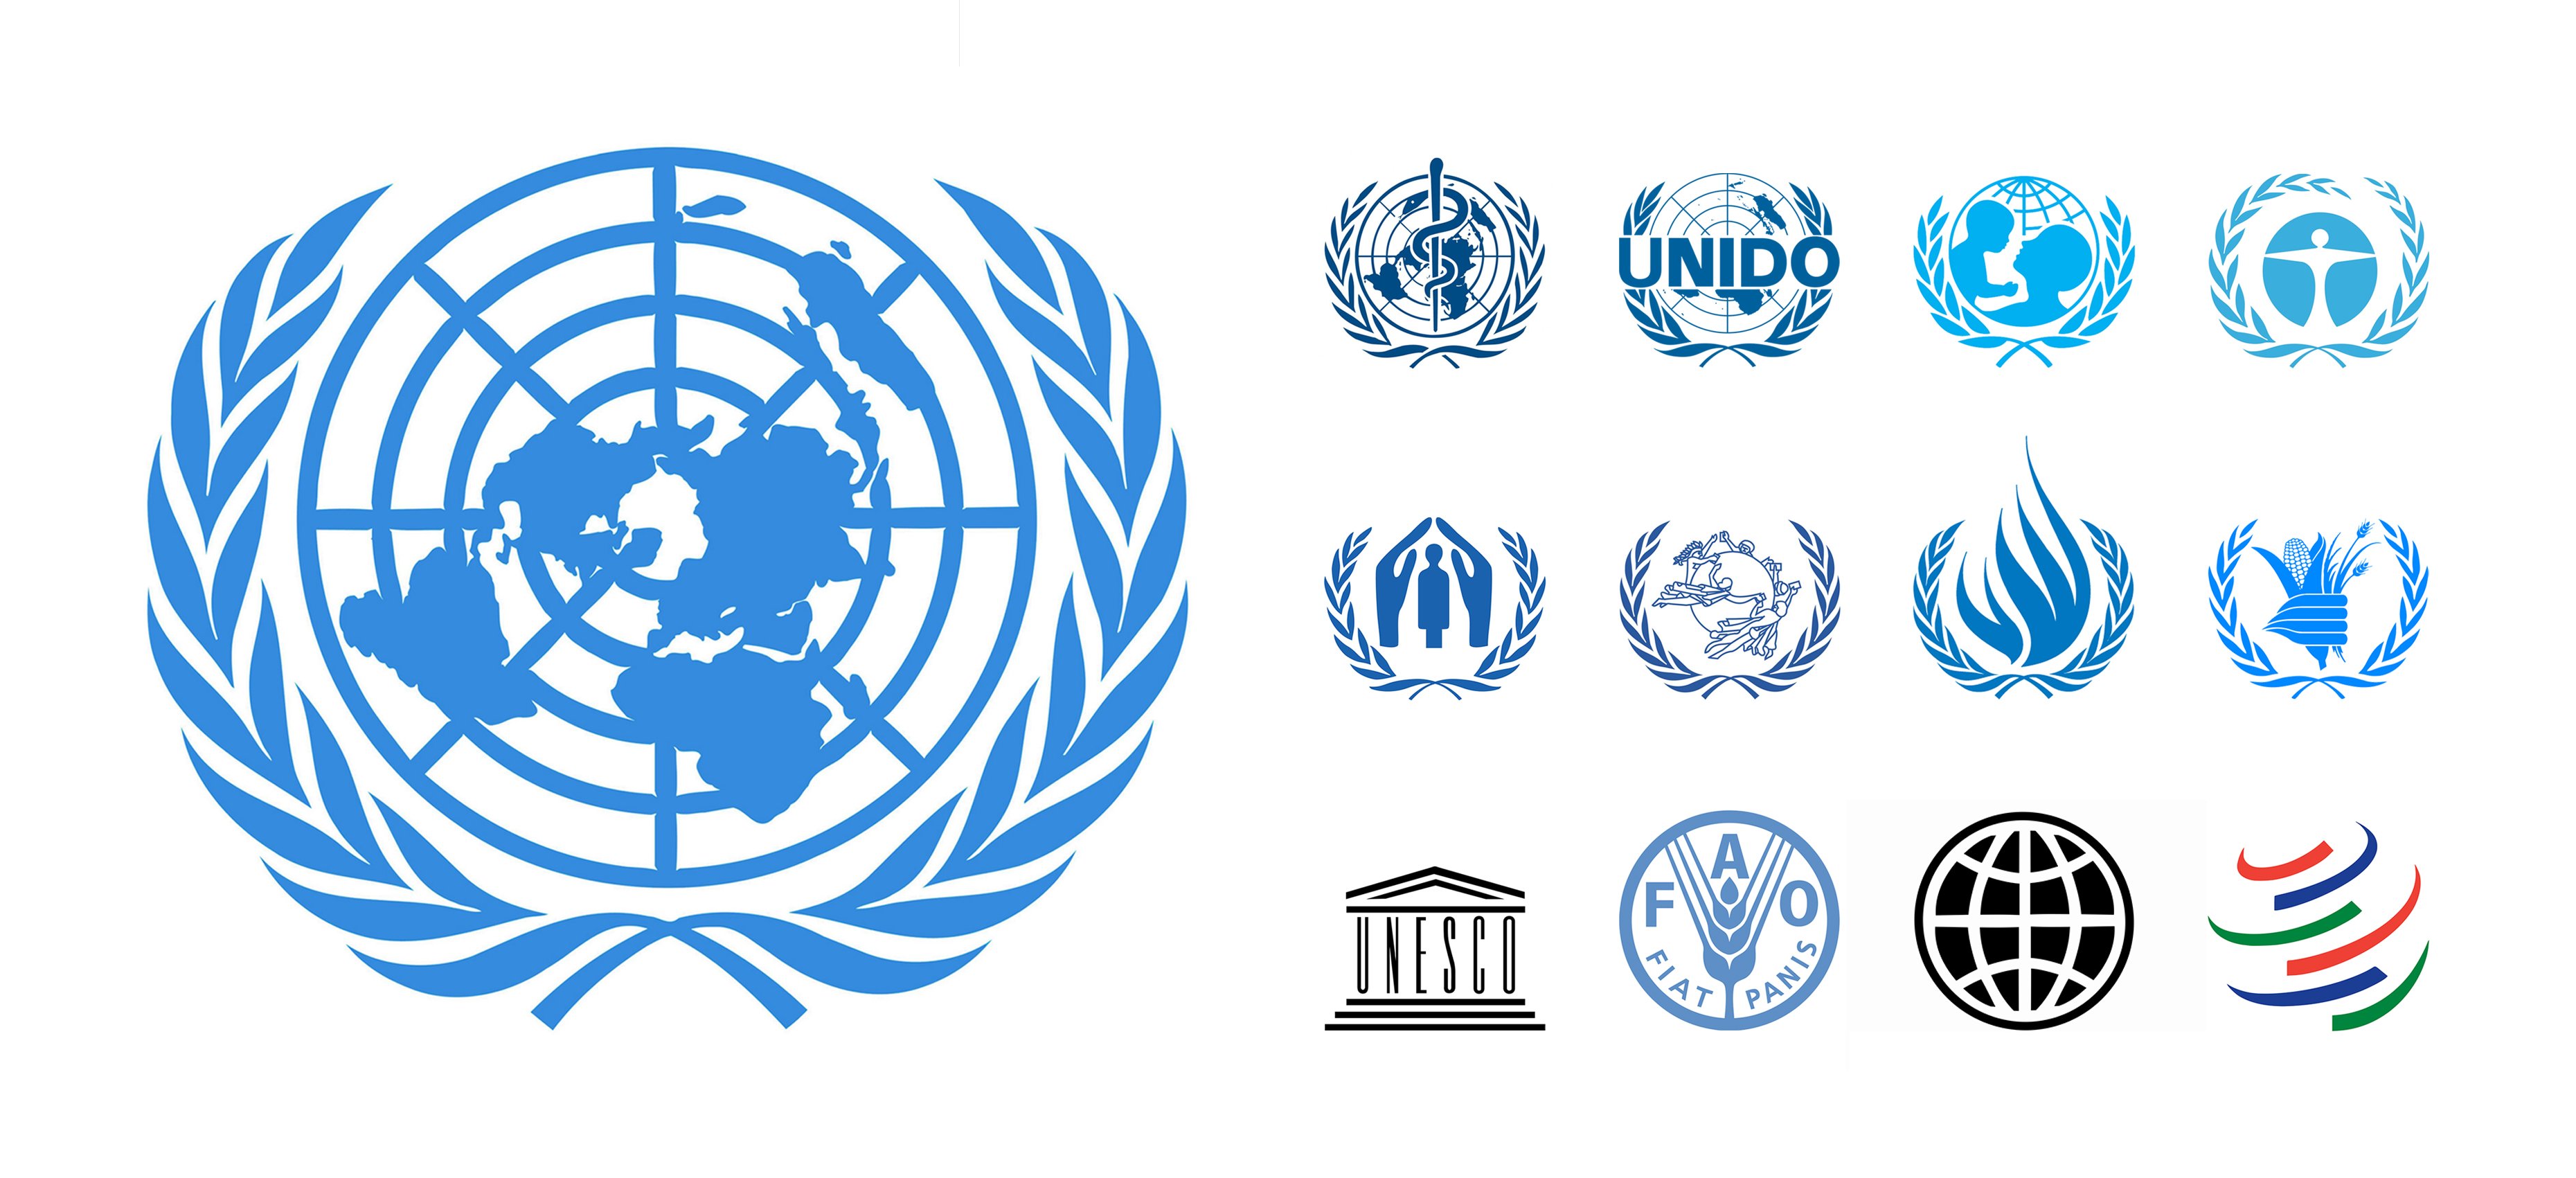 Мировые организации казахстан. Организация Объединенных наций ЮНЕСКО. Лого организация Объединенных наций (ООН). Международные экономические организации эмблемы.